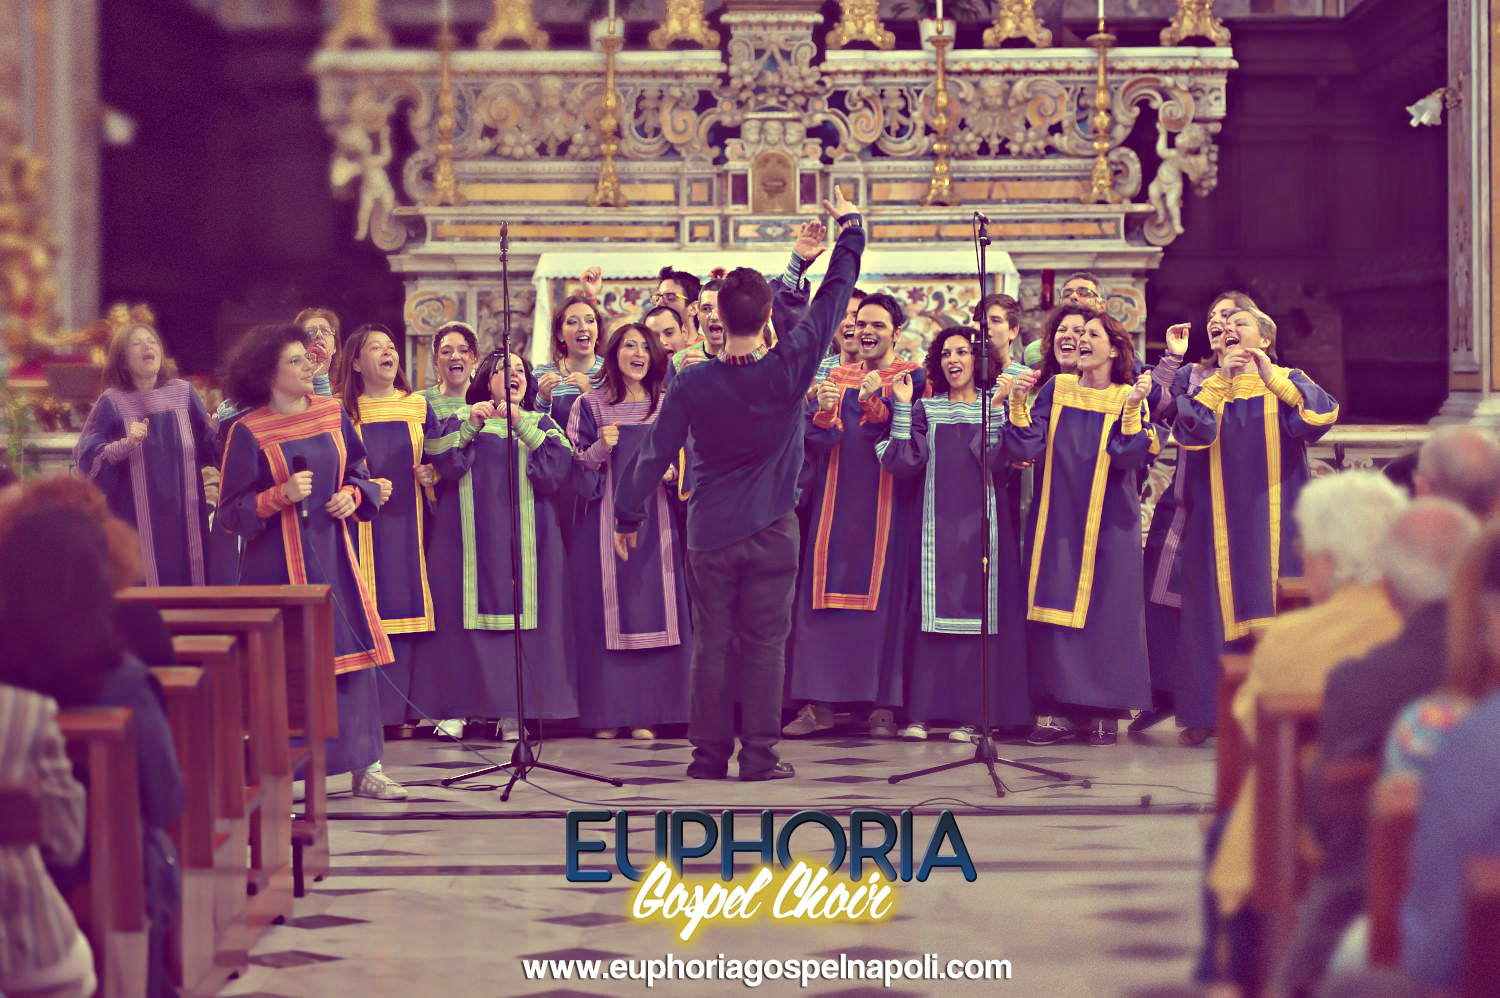  Euphoria Gospel Choir Christmas, il tour al via da sabato 3 dicembre